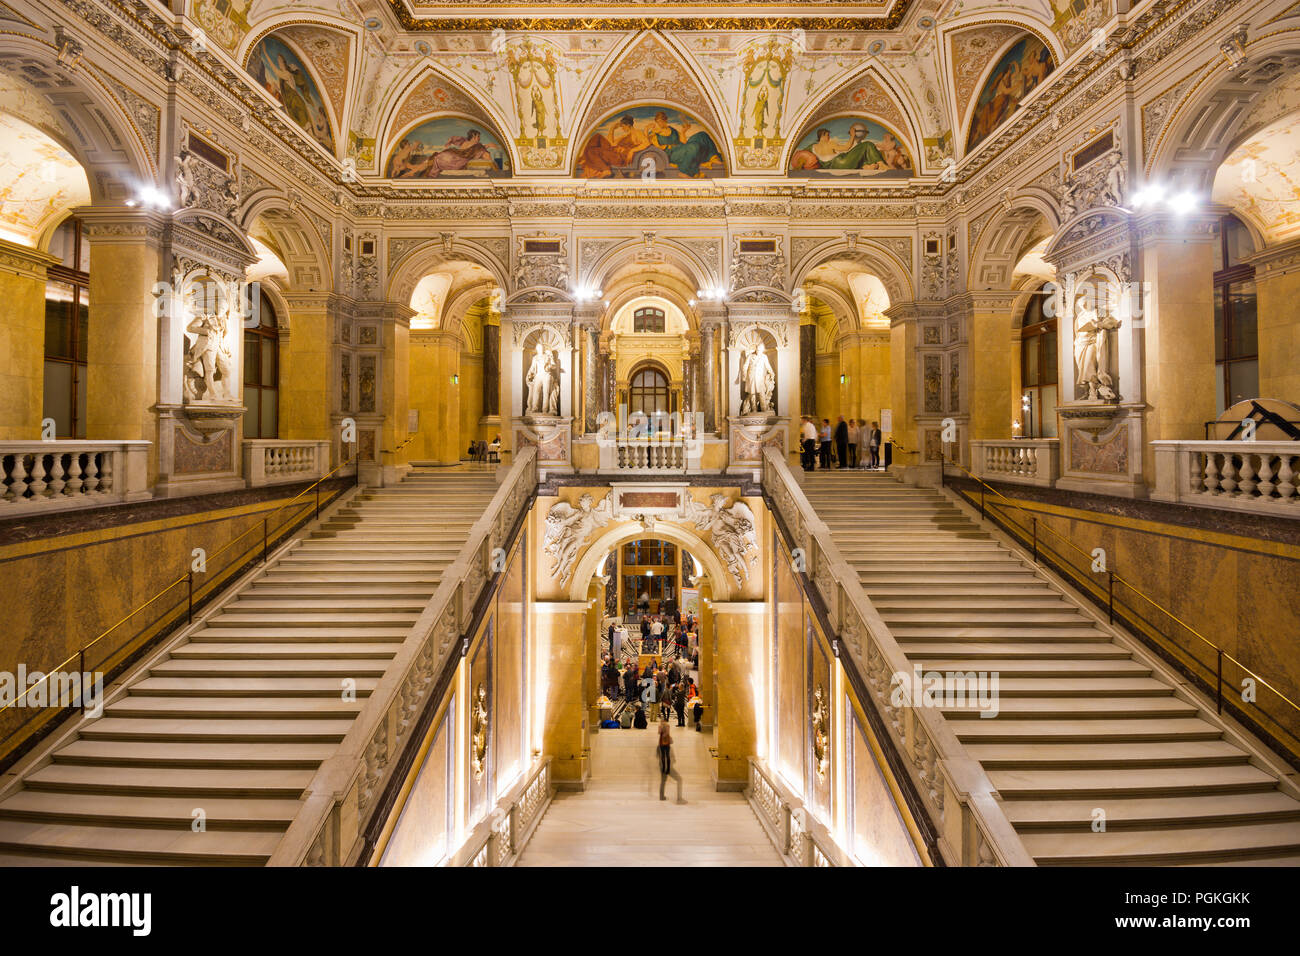 Prächtige Treppe mit Statuen und Rundbögen in imposanten Innenraum des berühmten Naturhistorisches Museum (Natural History Museum) in der Wiener Altstadt. Stockfoto